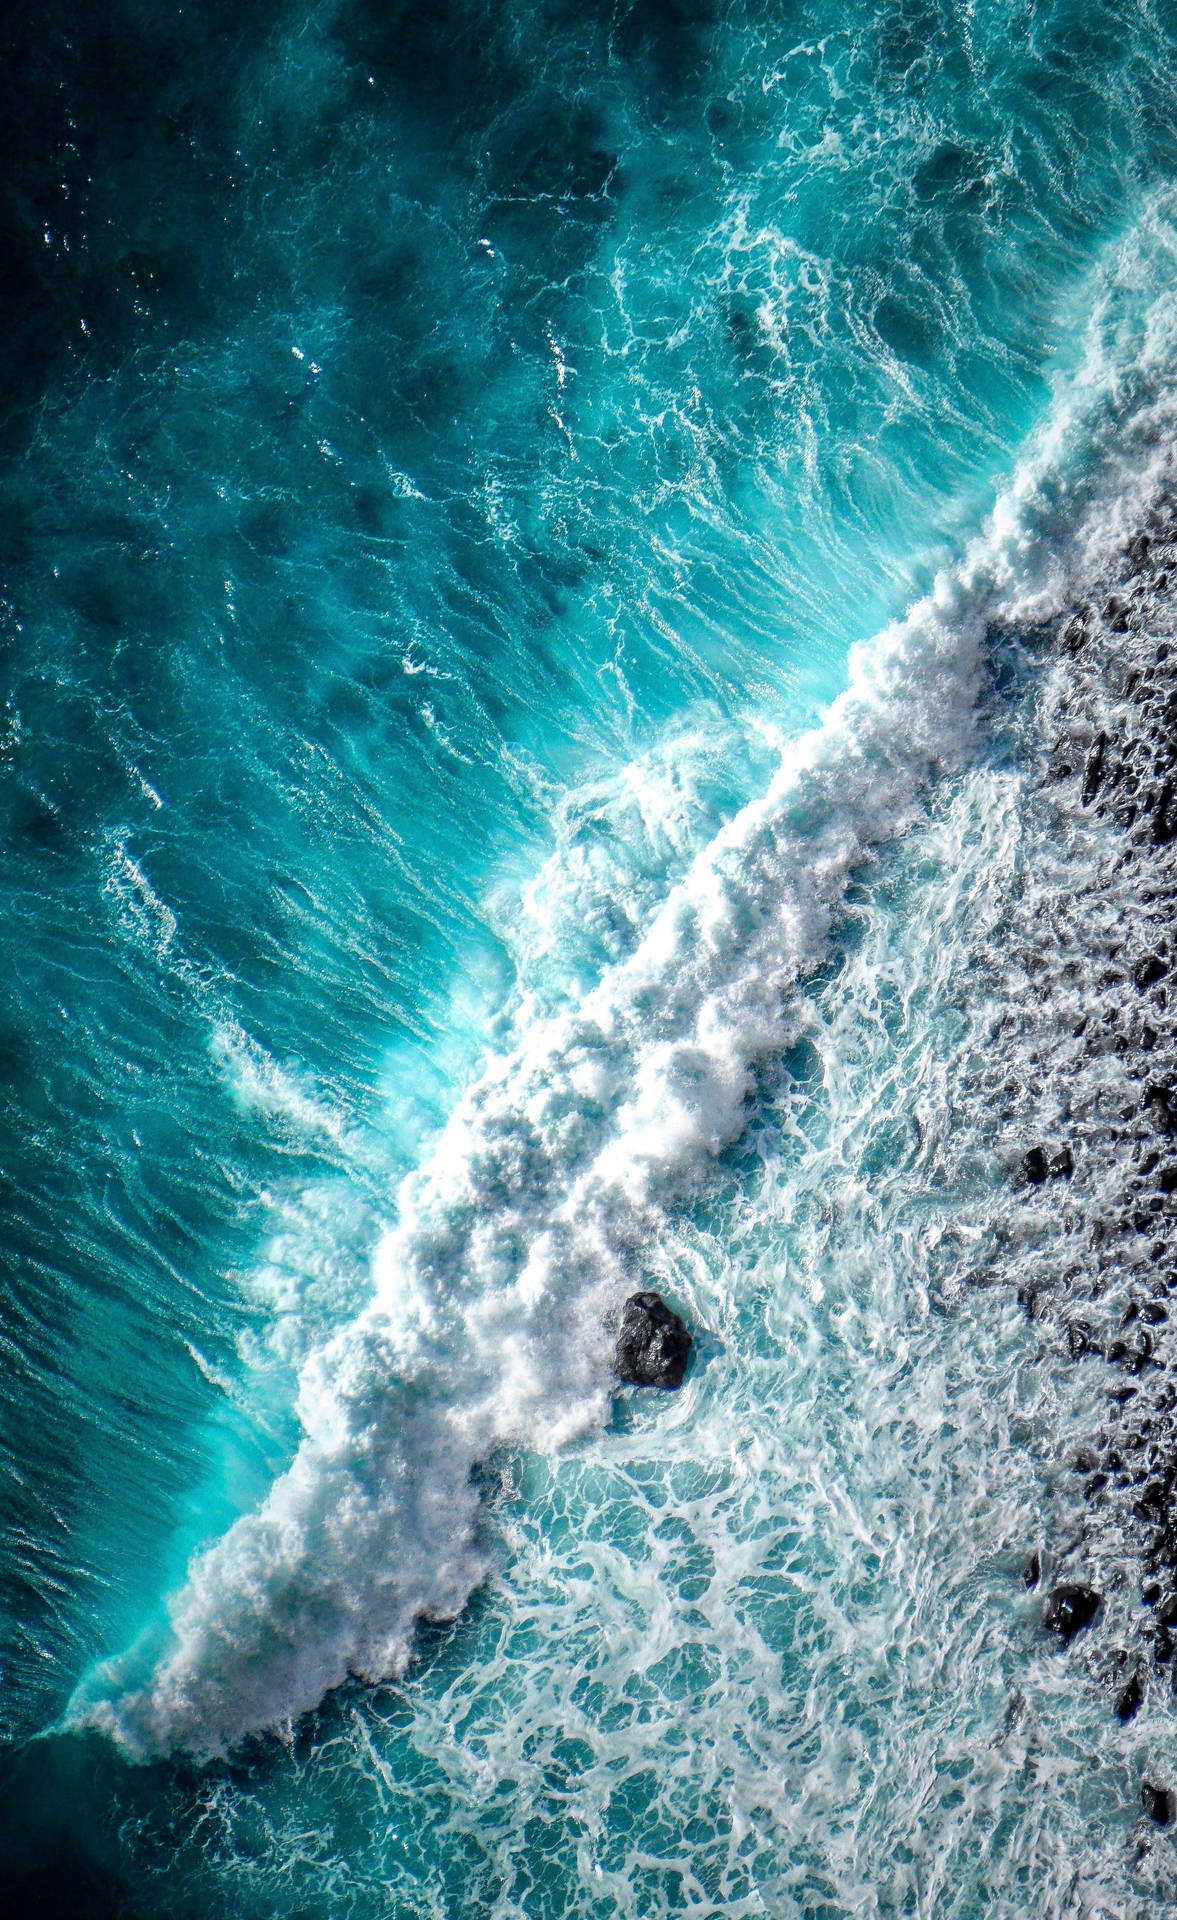 Impresionantetoma Desde Arriba De Una Ola En La Playa Para Iphone. Fondo de pantalla